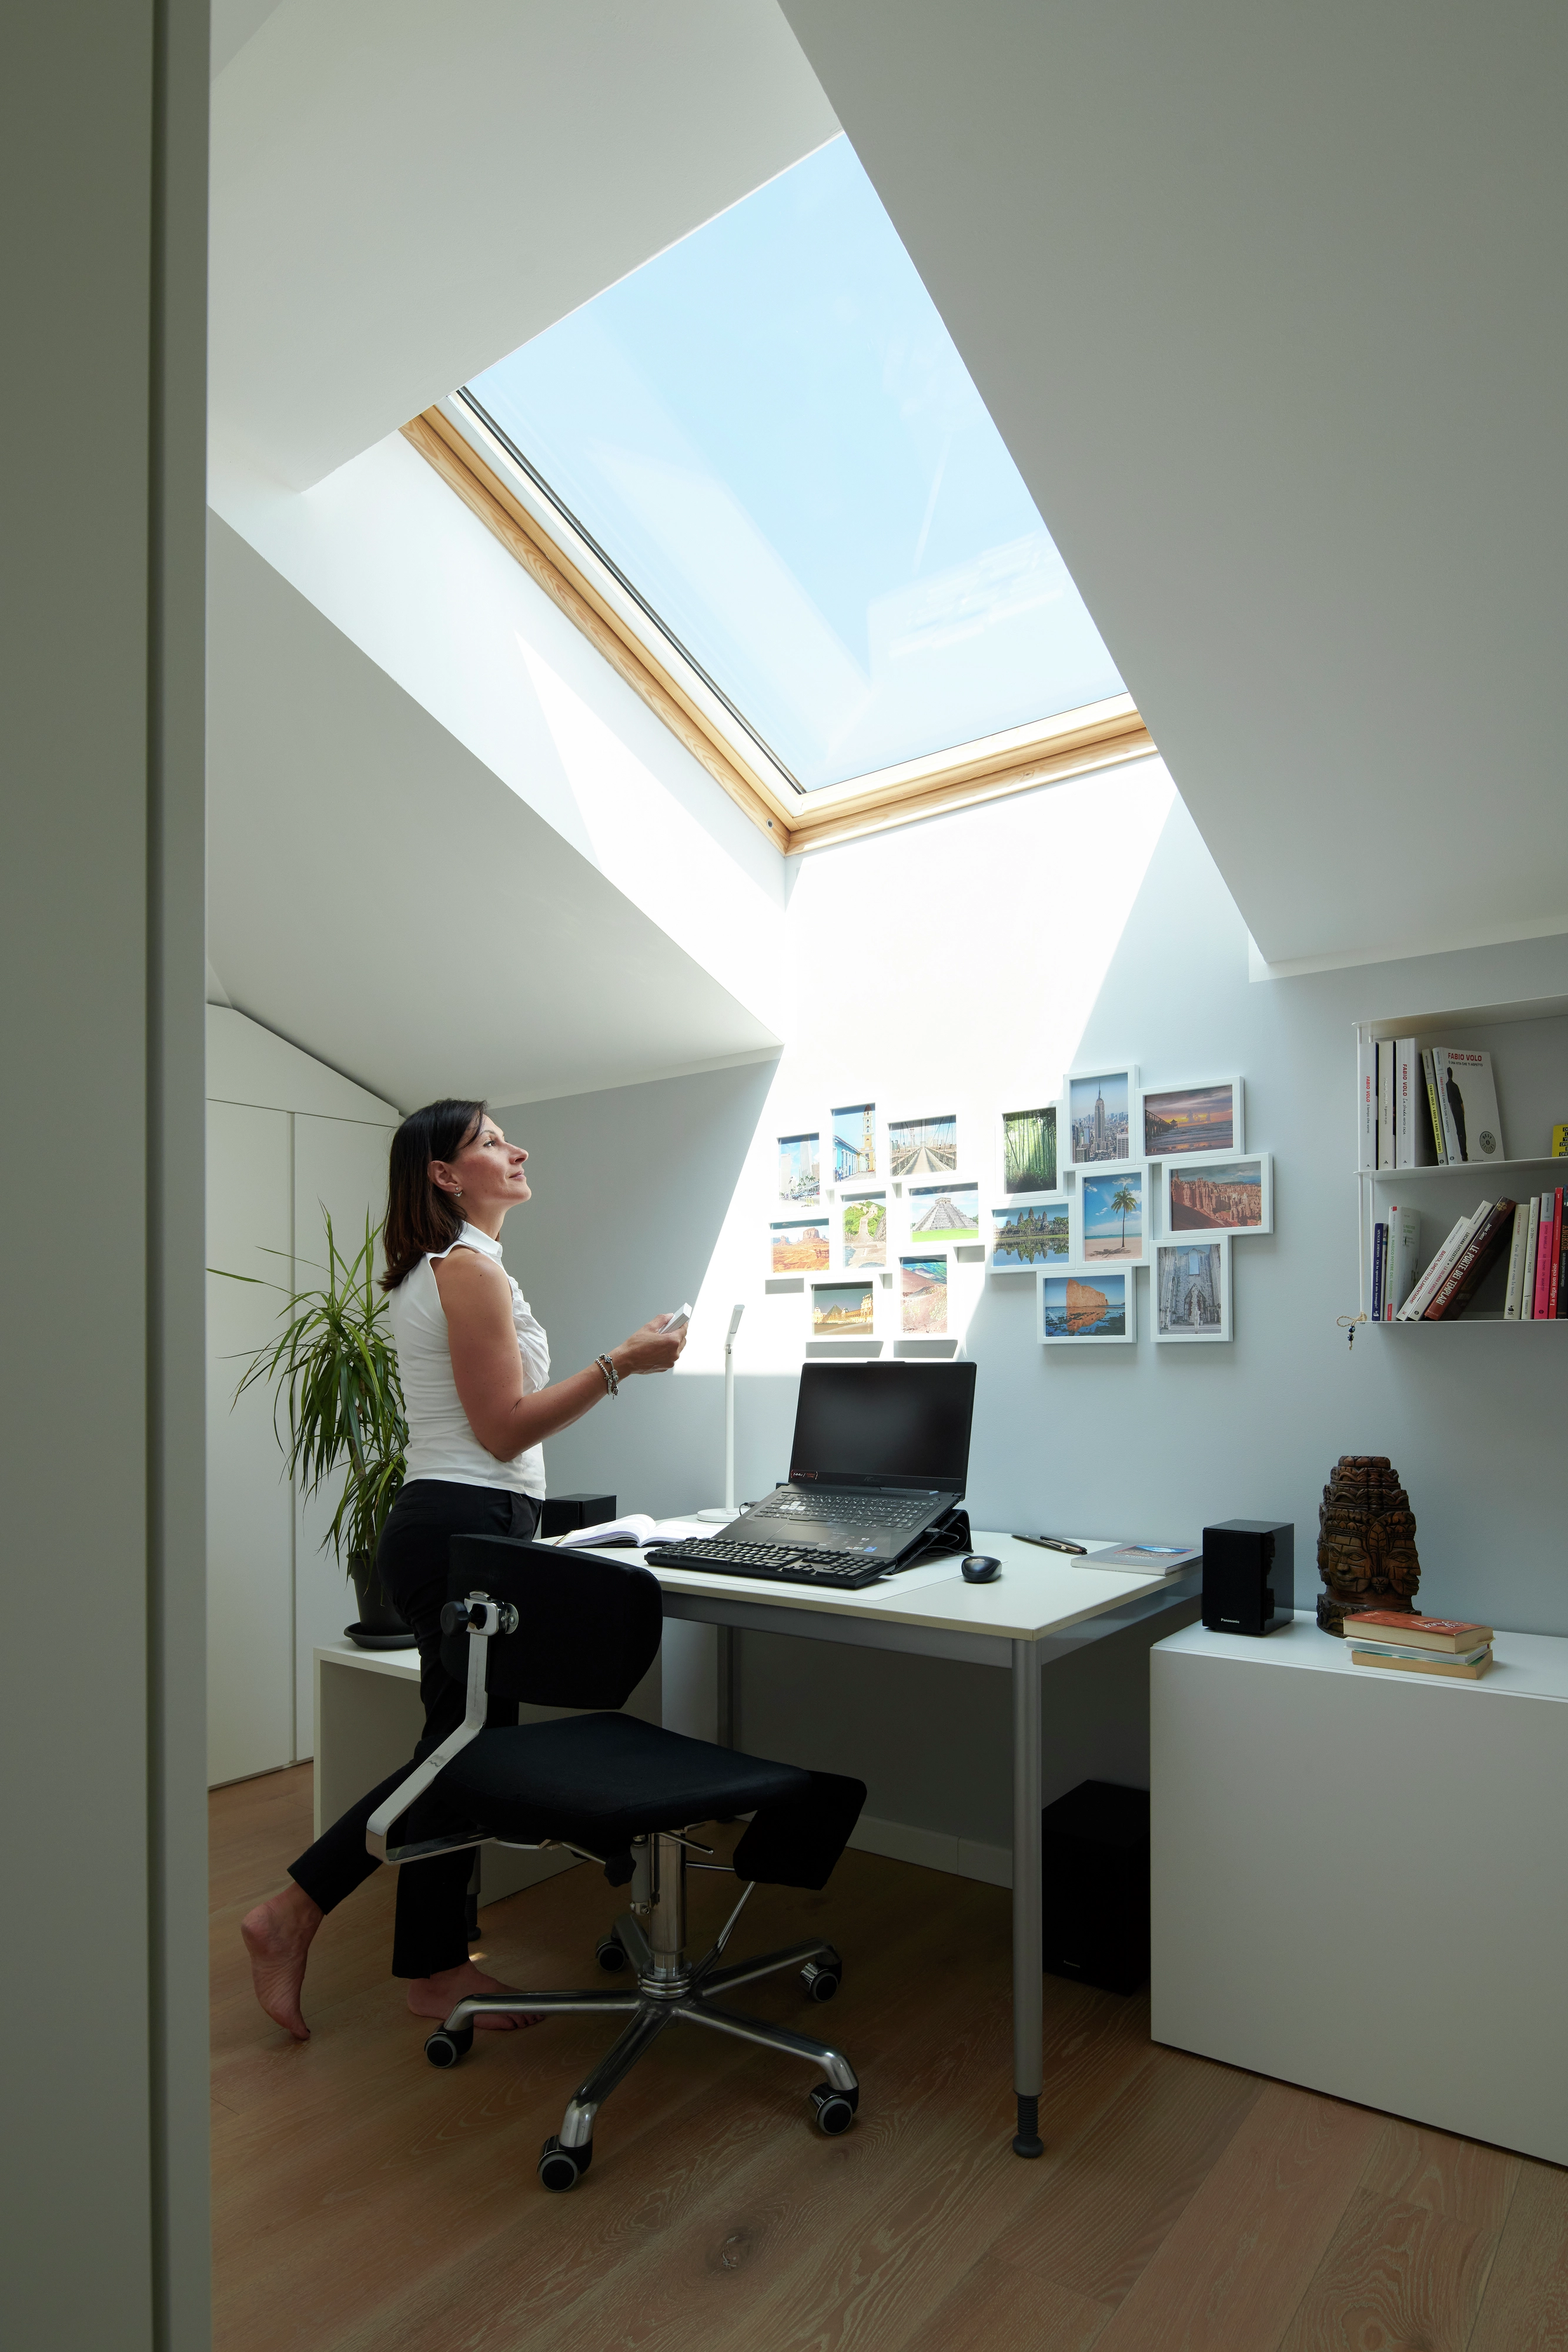 Bureau à domicile dans le comble avec fenêtre de toit VELUX, bureau blanc, ordinateur portable et photos murales.